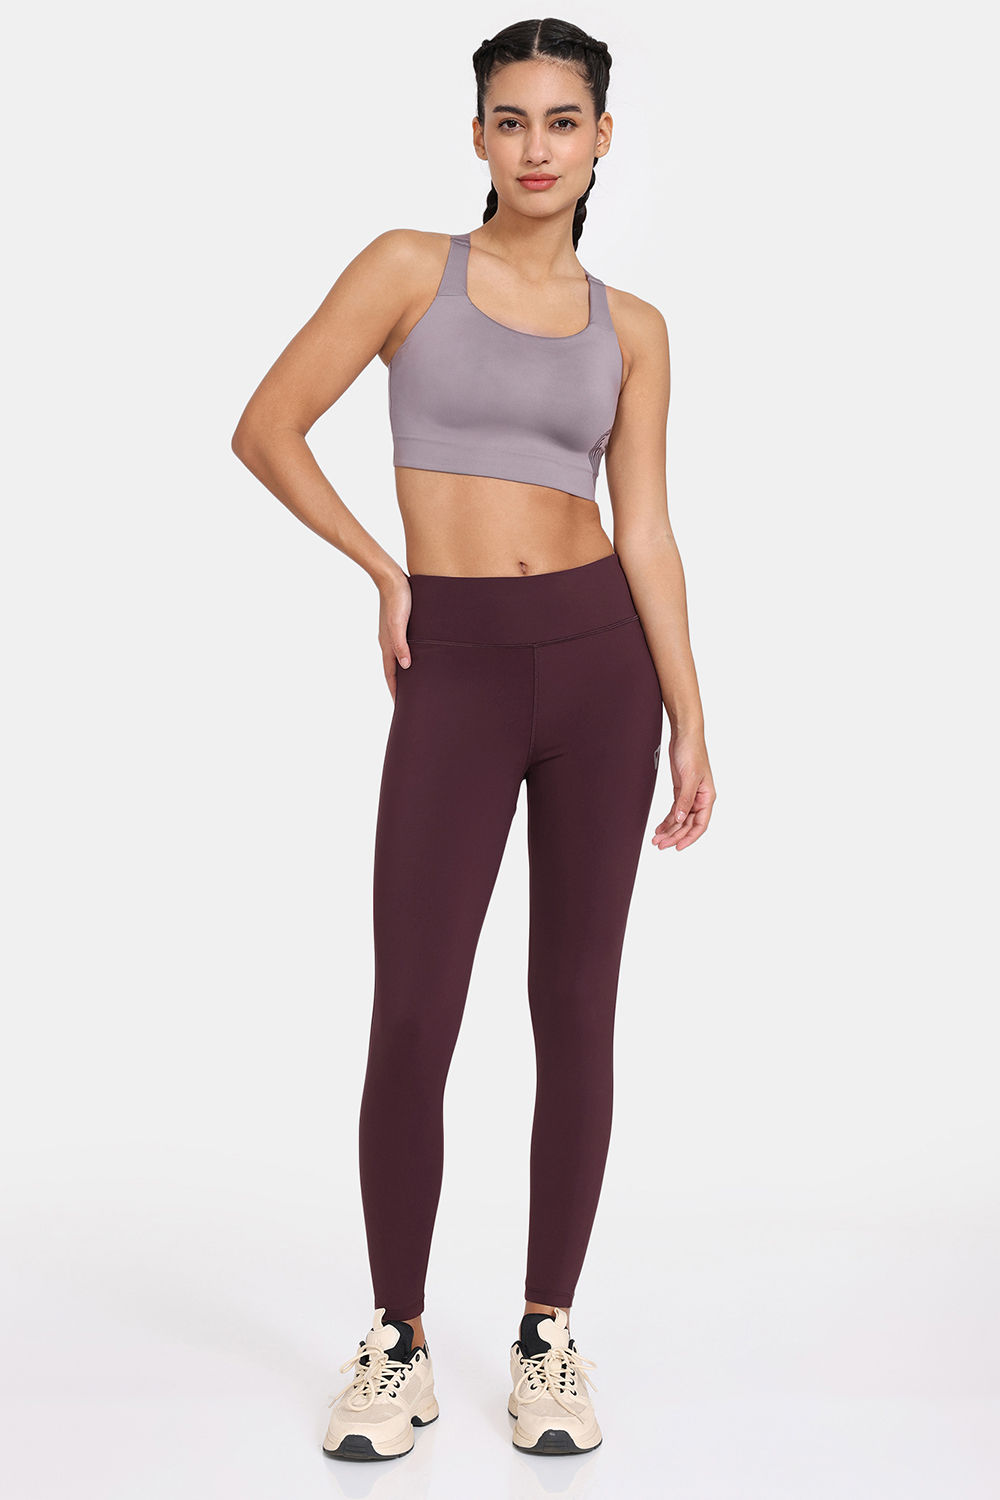 Jockey Ladies' Cropped Slit Flare Yoga Pants, Black Medium - Walmart.com